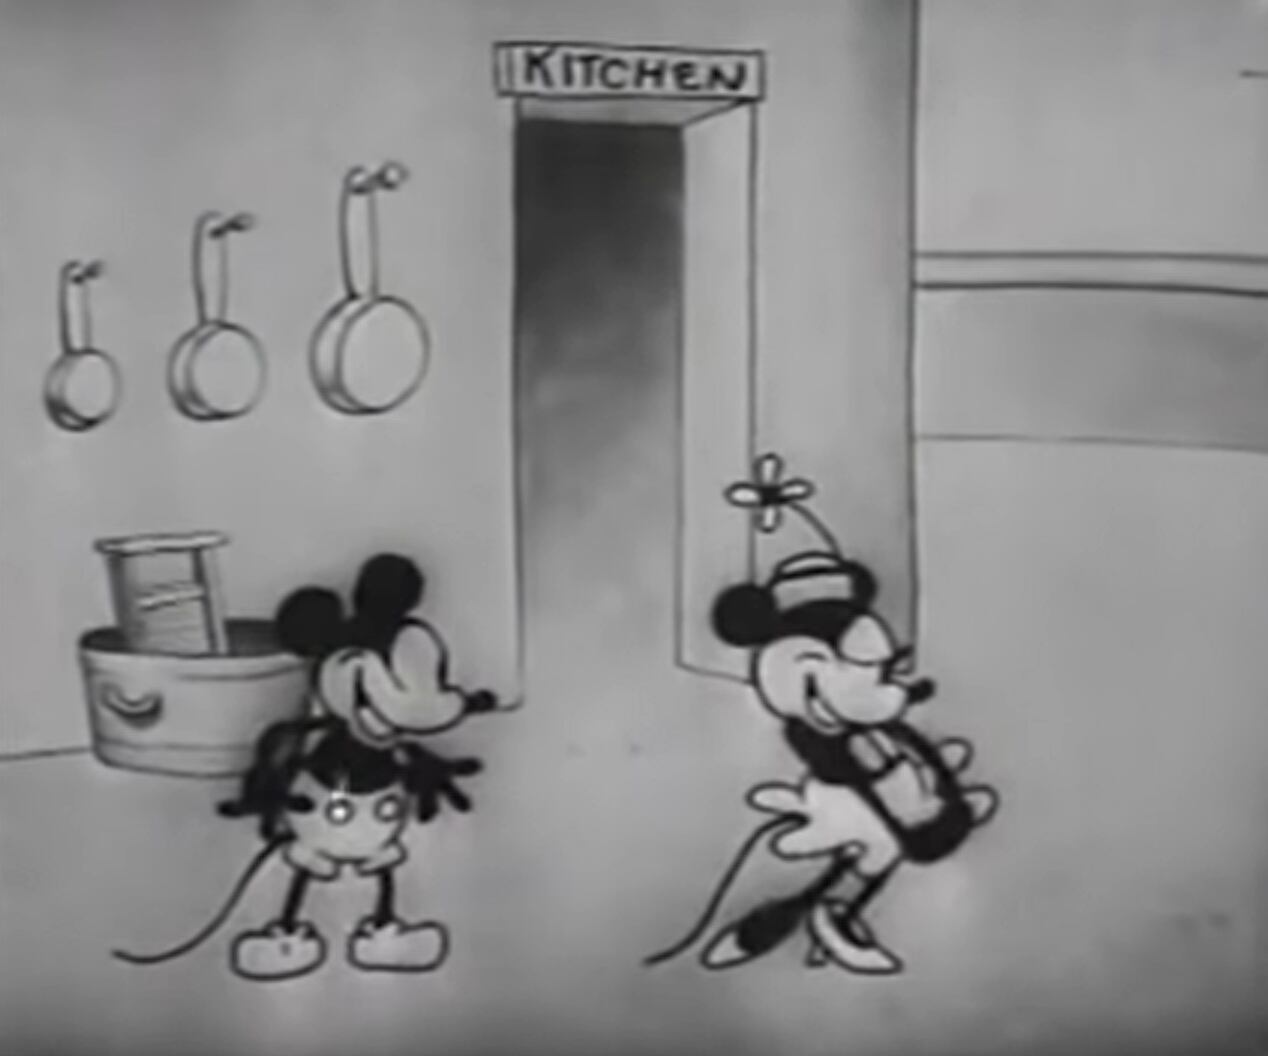 Habrá restricciones para el uso en el dominio público del ratón de Disney. (Foto: Steamboat Willie).